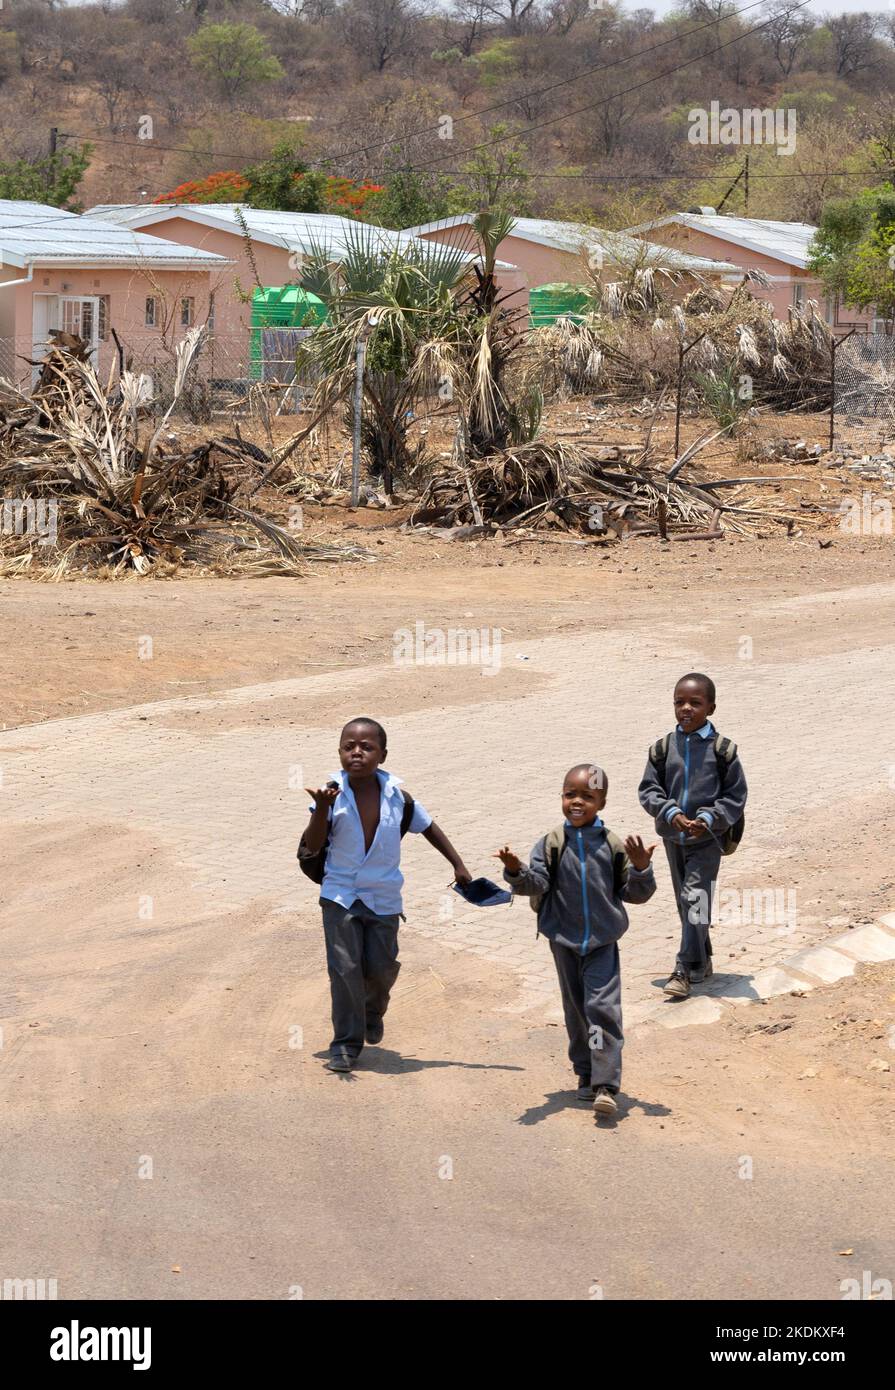 Enfants africains; trois jeunes garçons africains sur la route, ville de Kasane, Afrique du Botswana. Enfants africains âgés de 10 ans. Banque D'Images